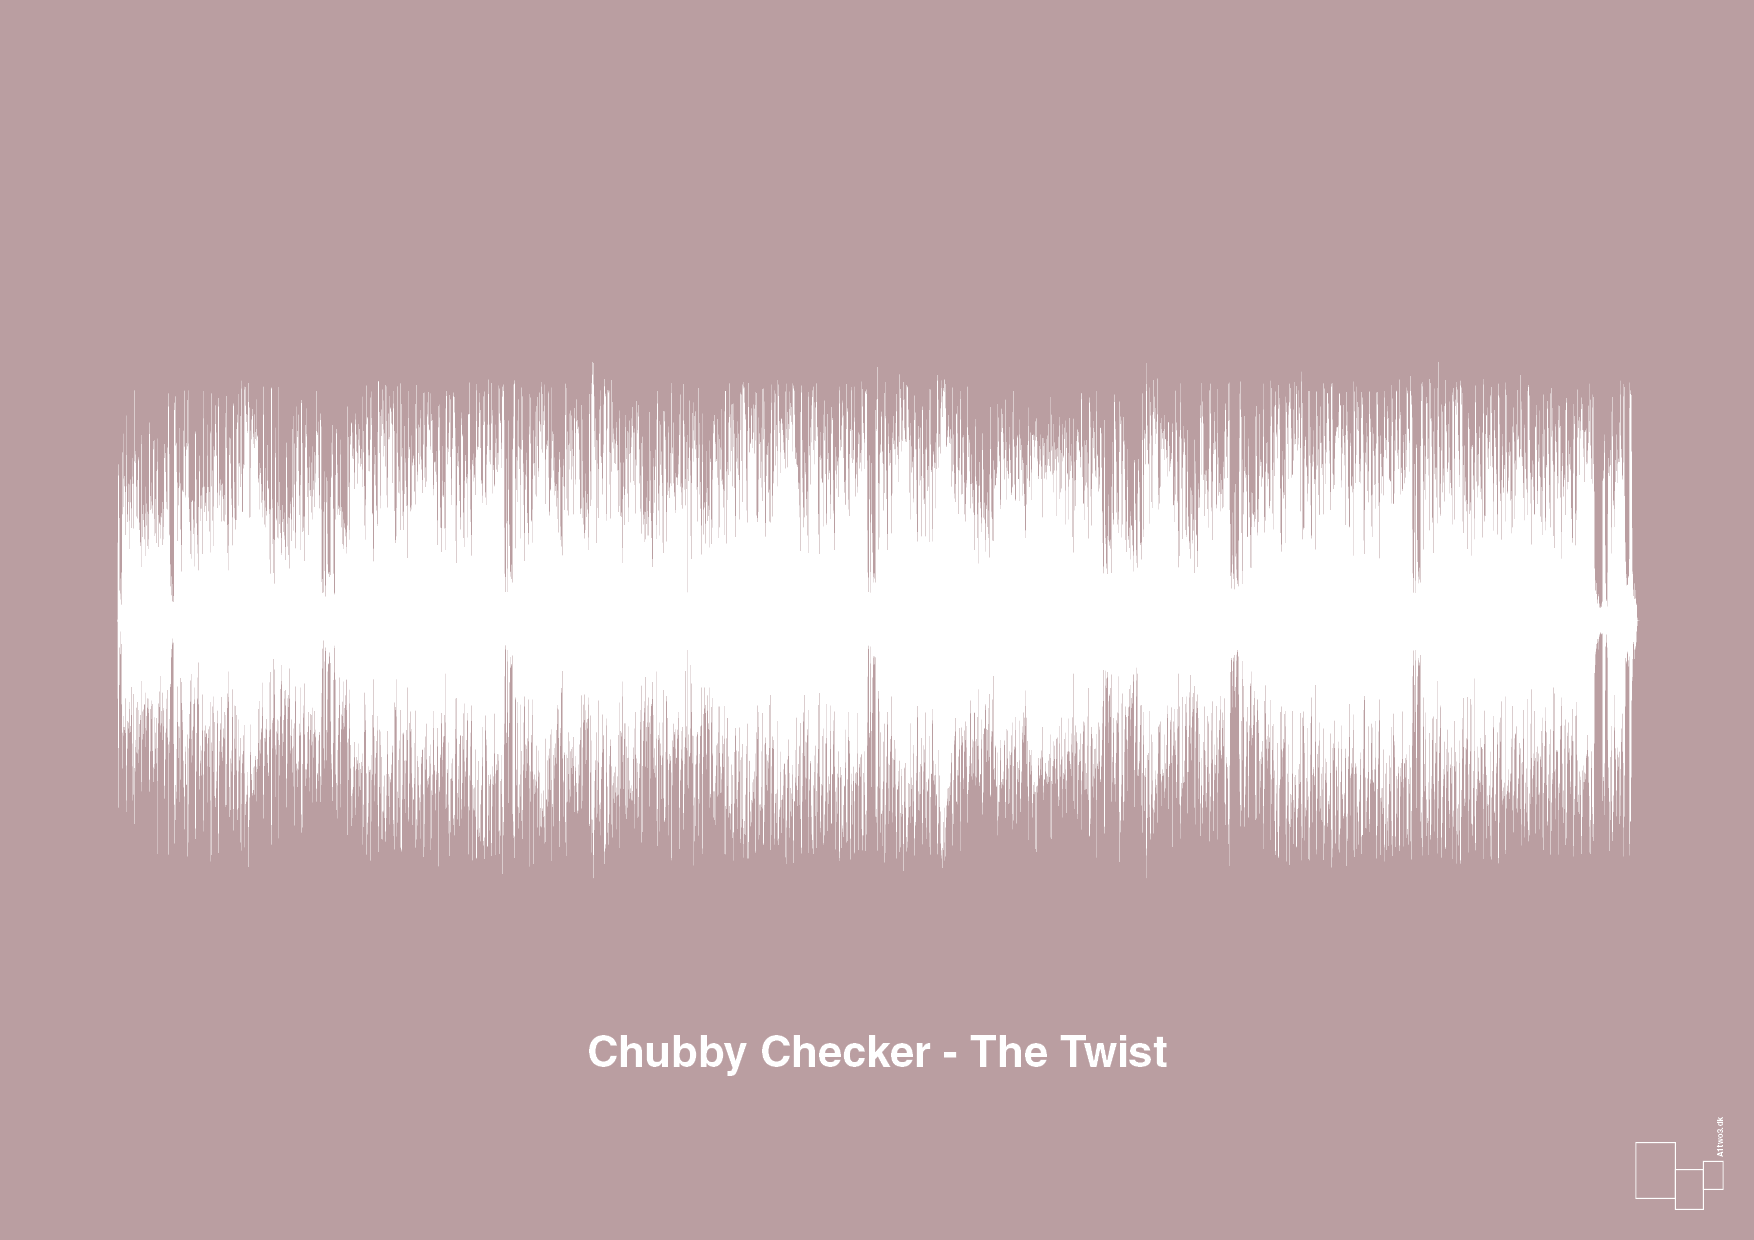 chubby checker - the twist - Plakat med Musik i Light Rose